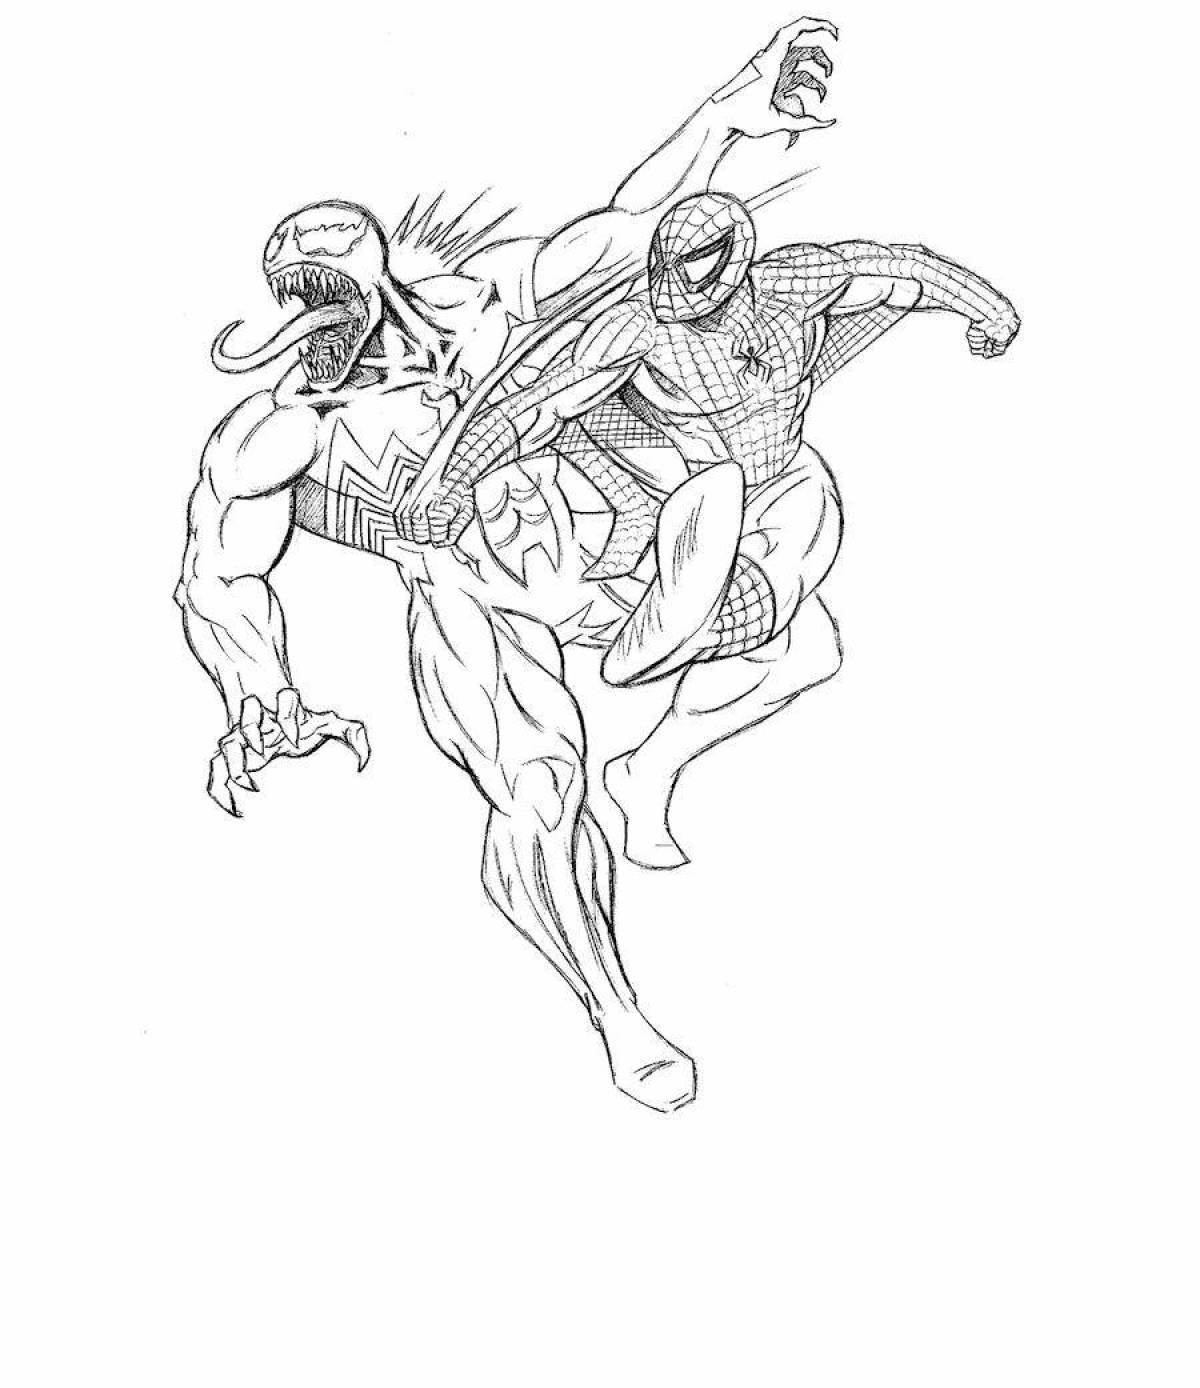 Impressive spiderman vs venom coloring book